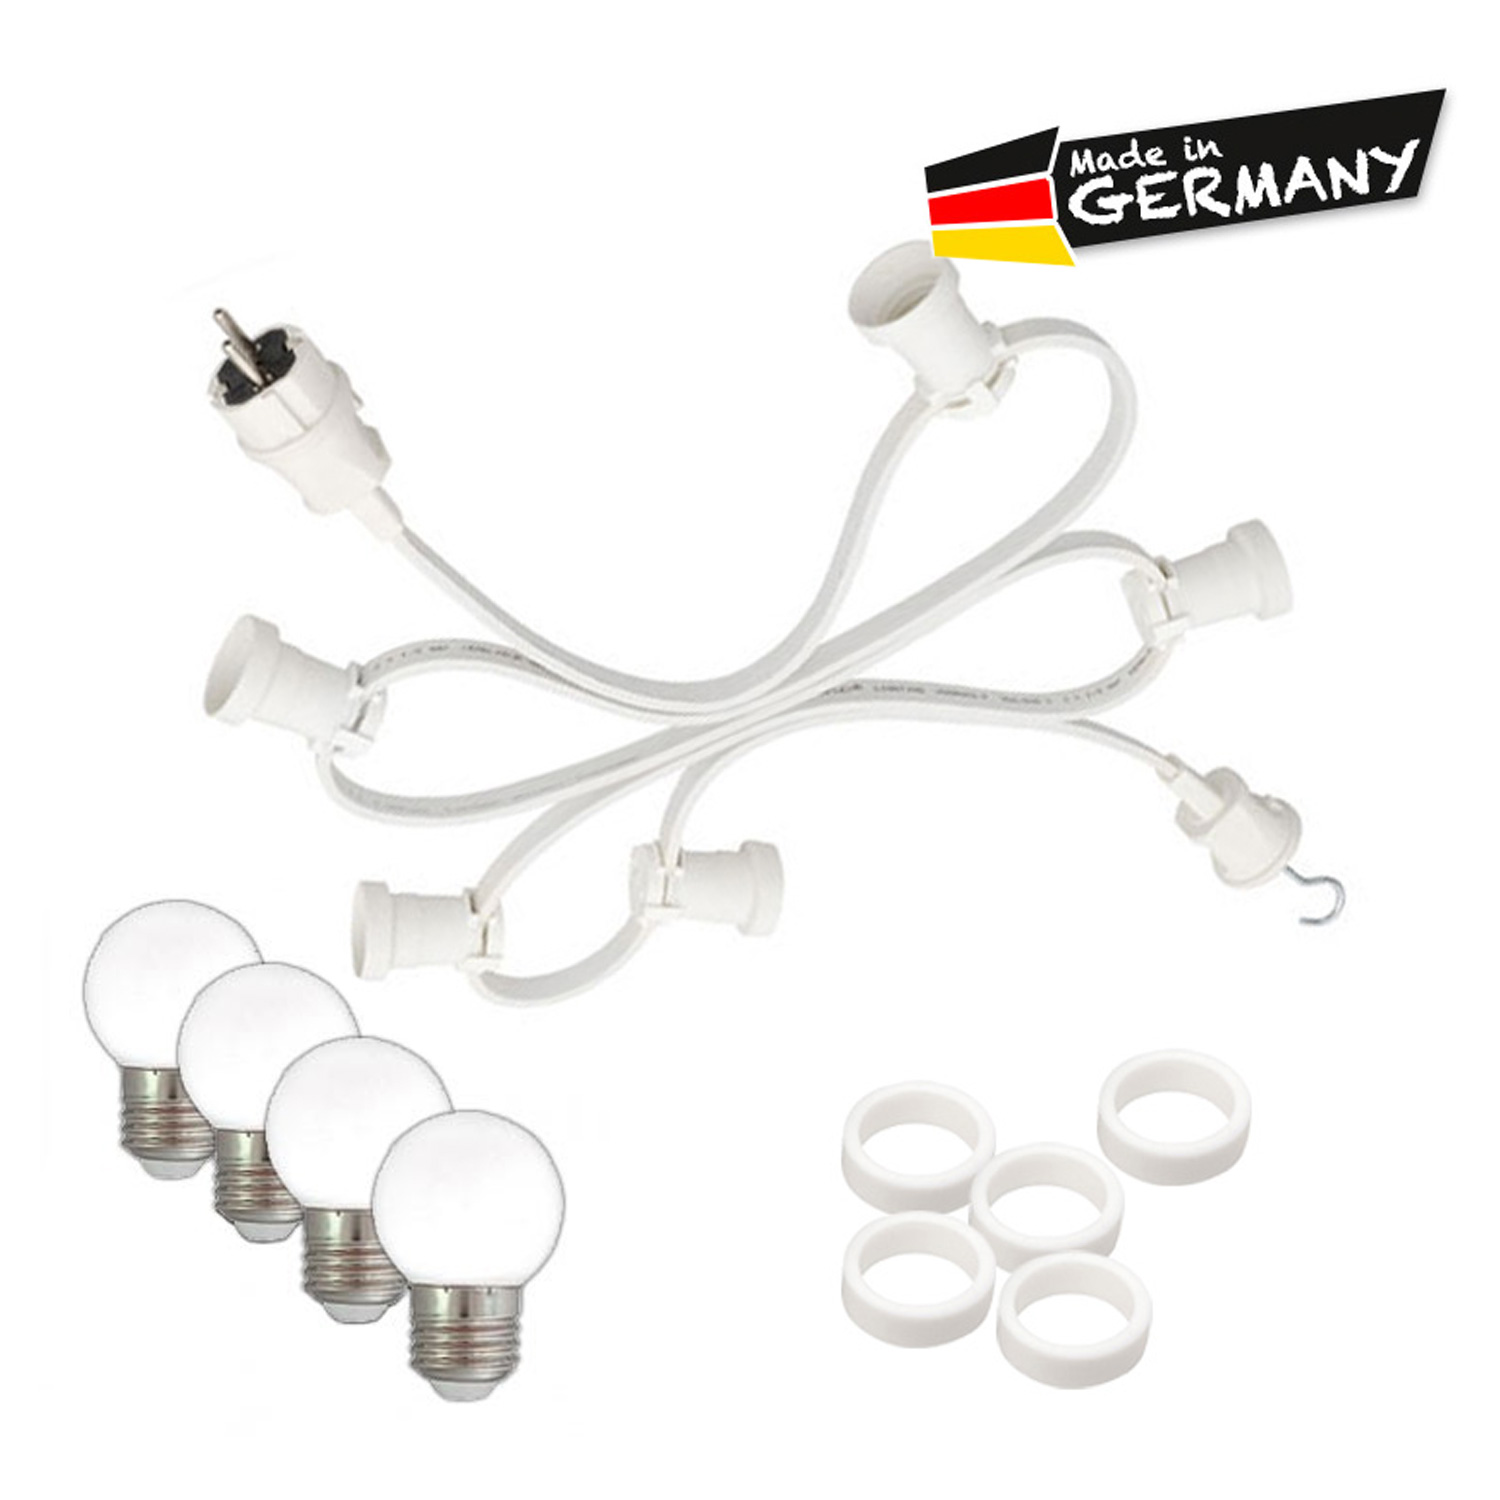 Illu-/Partylichterkette 10m - Außenlichterkette - Made in Germany - 10 x warmweiße LED Kugellampen